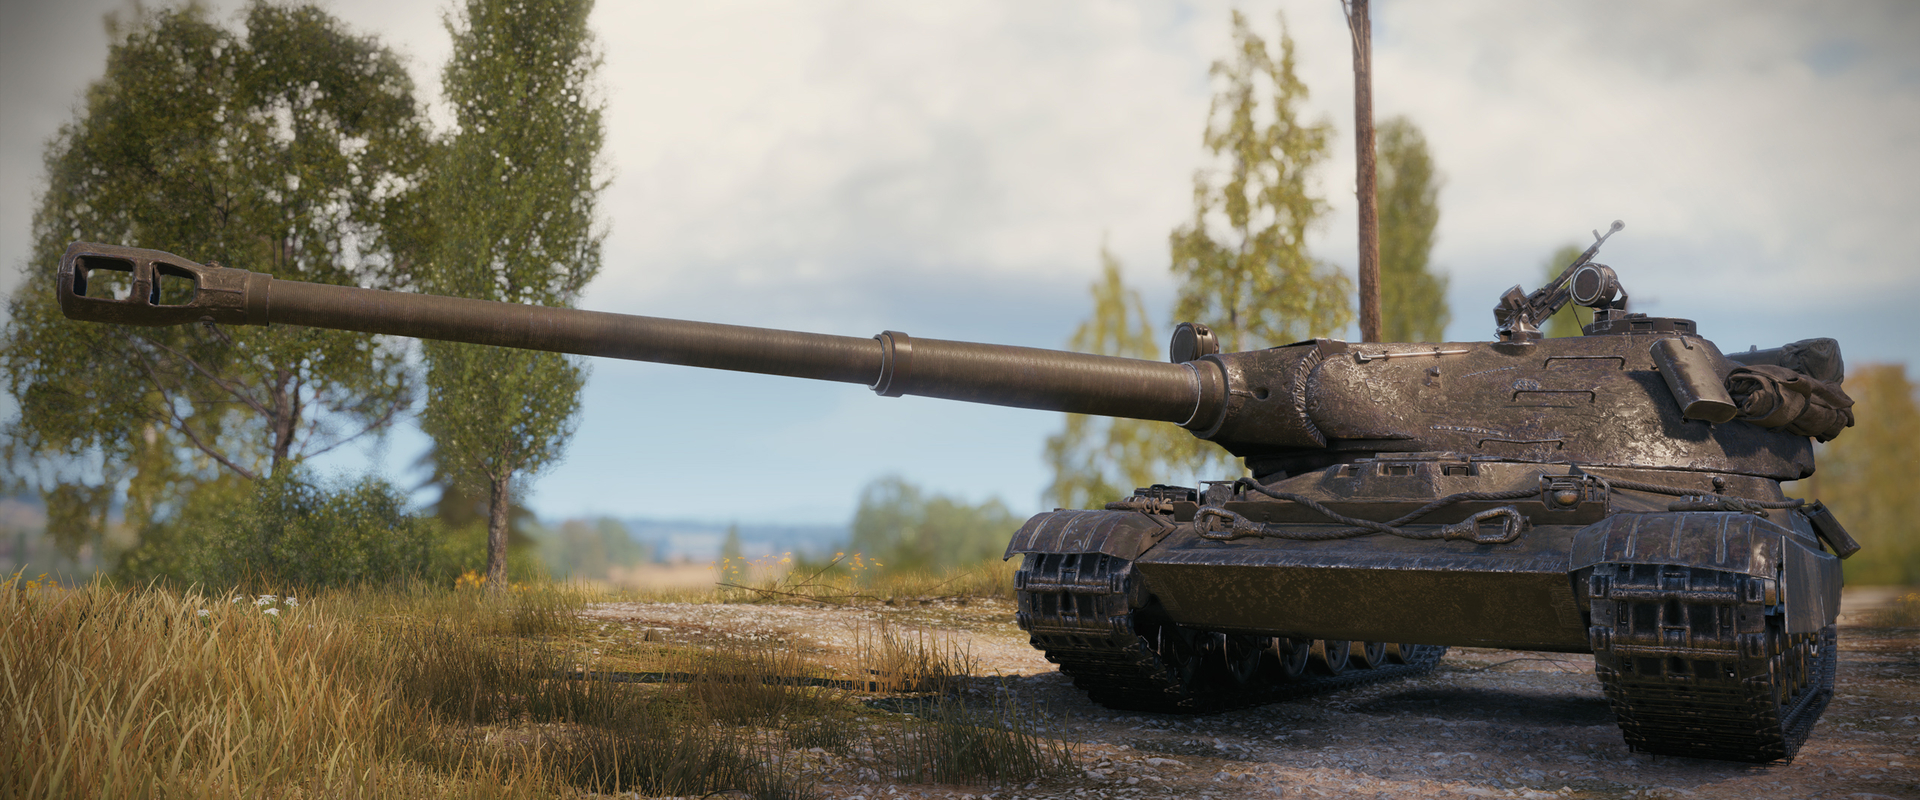 Máris visszacsípnek a top tier lengyel tank értékeiből